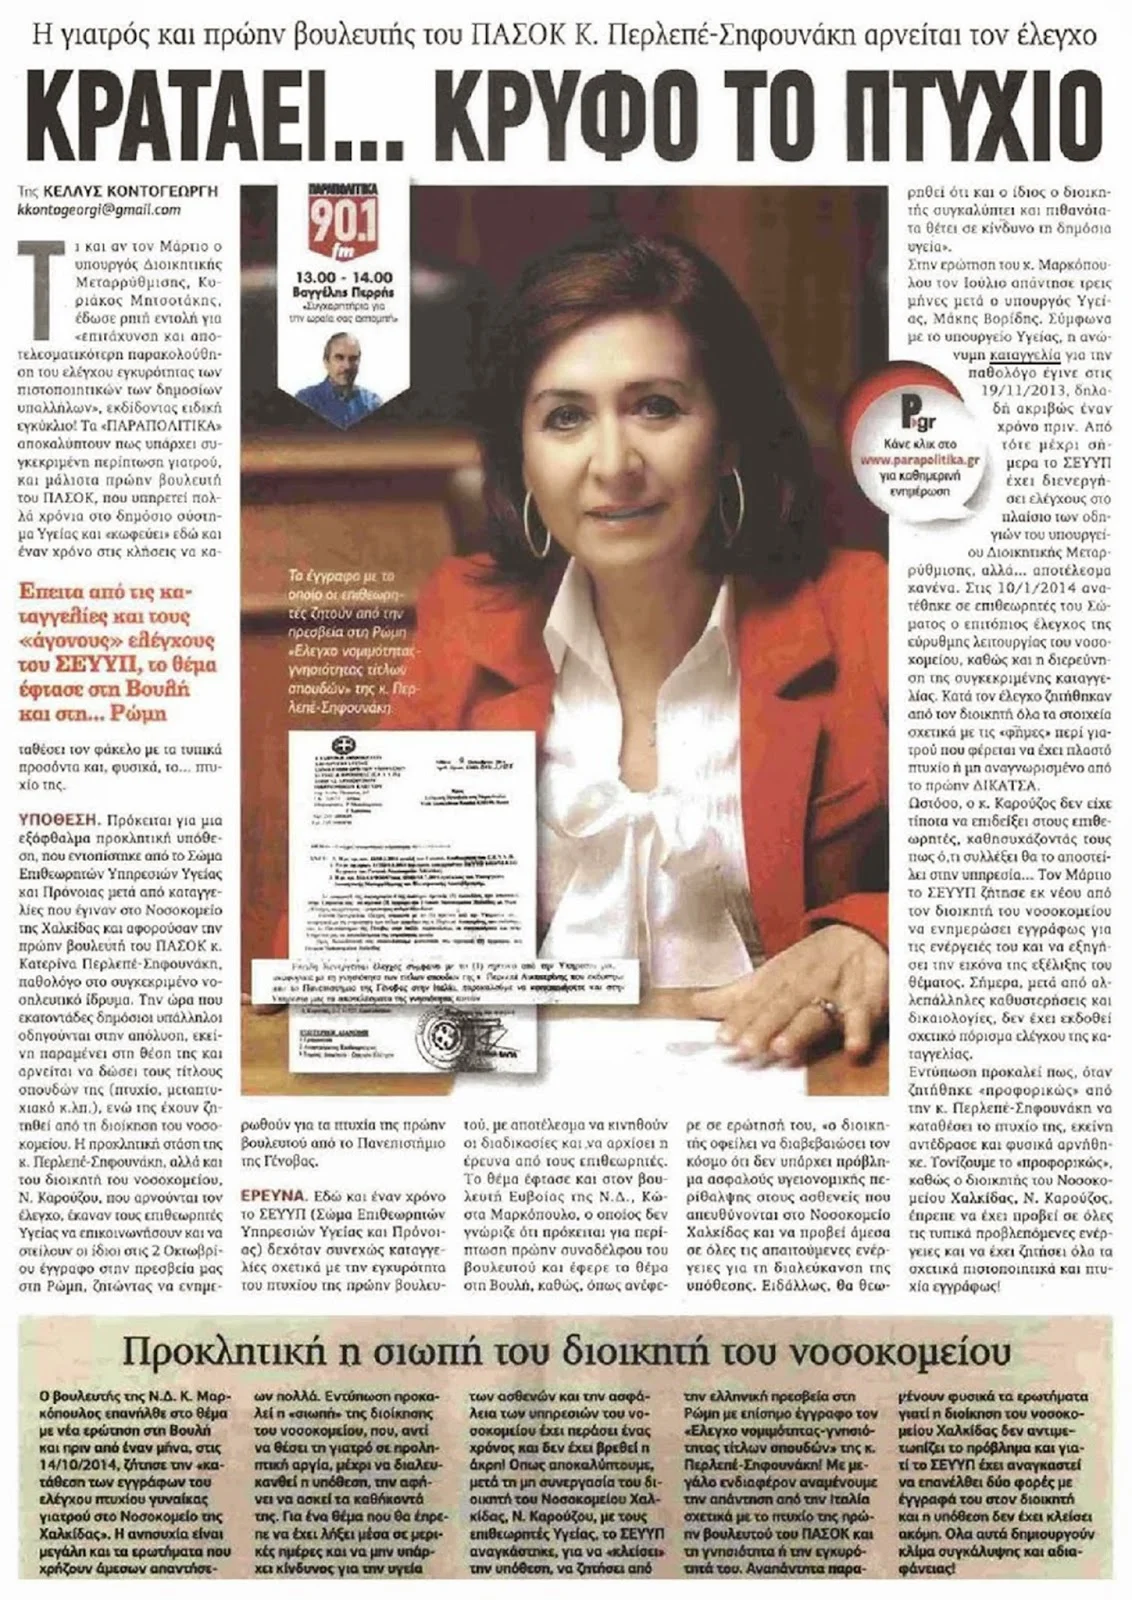 Χαλκίδα: Η Κατερίνα Πελεπέ κατέθεσε αγωγή κατά της εφημερίδας «Παραπολιτικά»